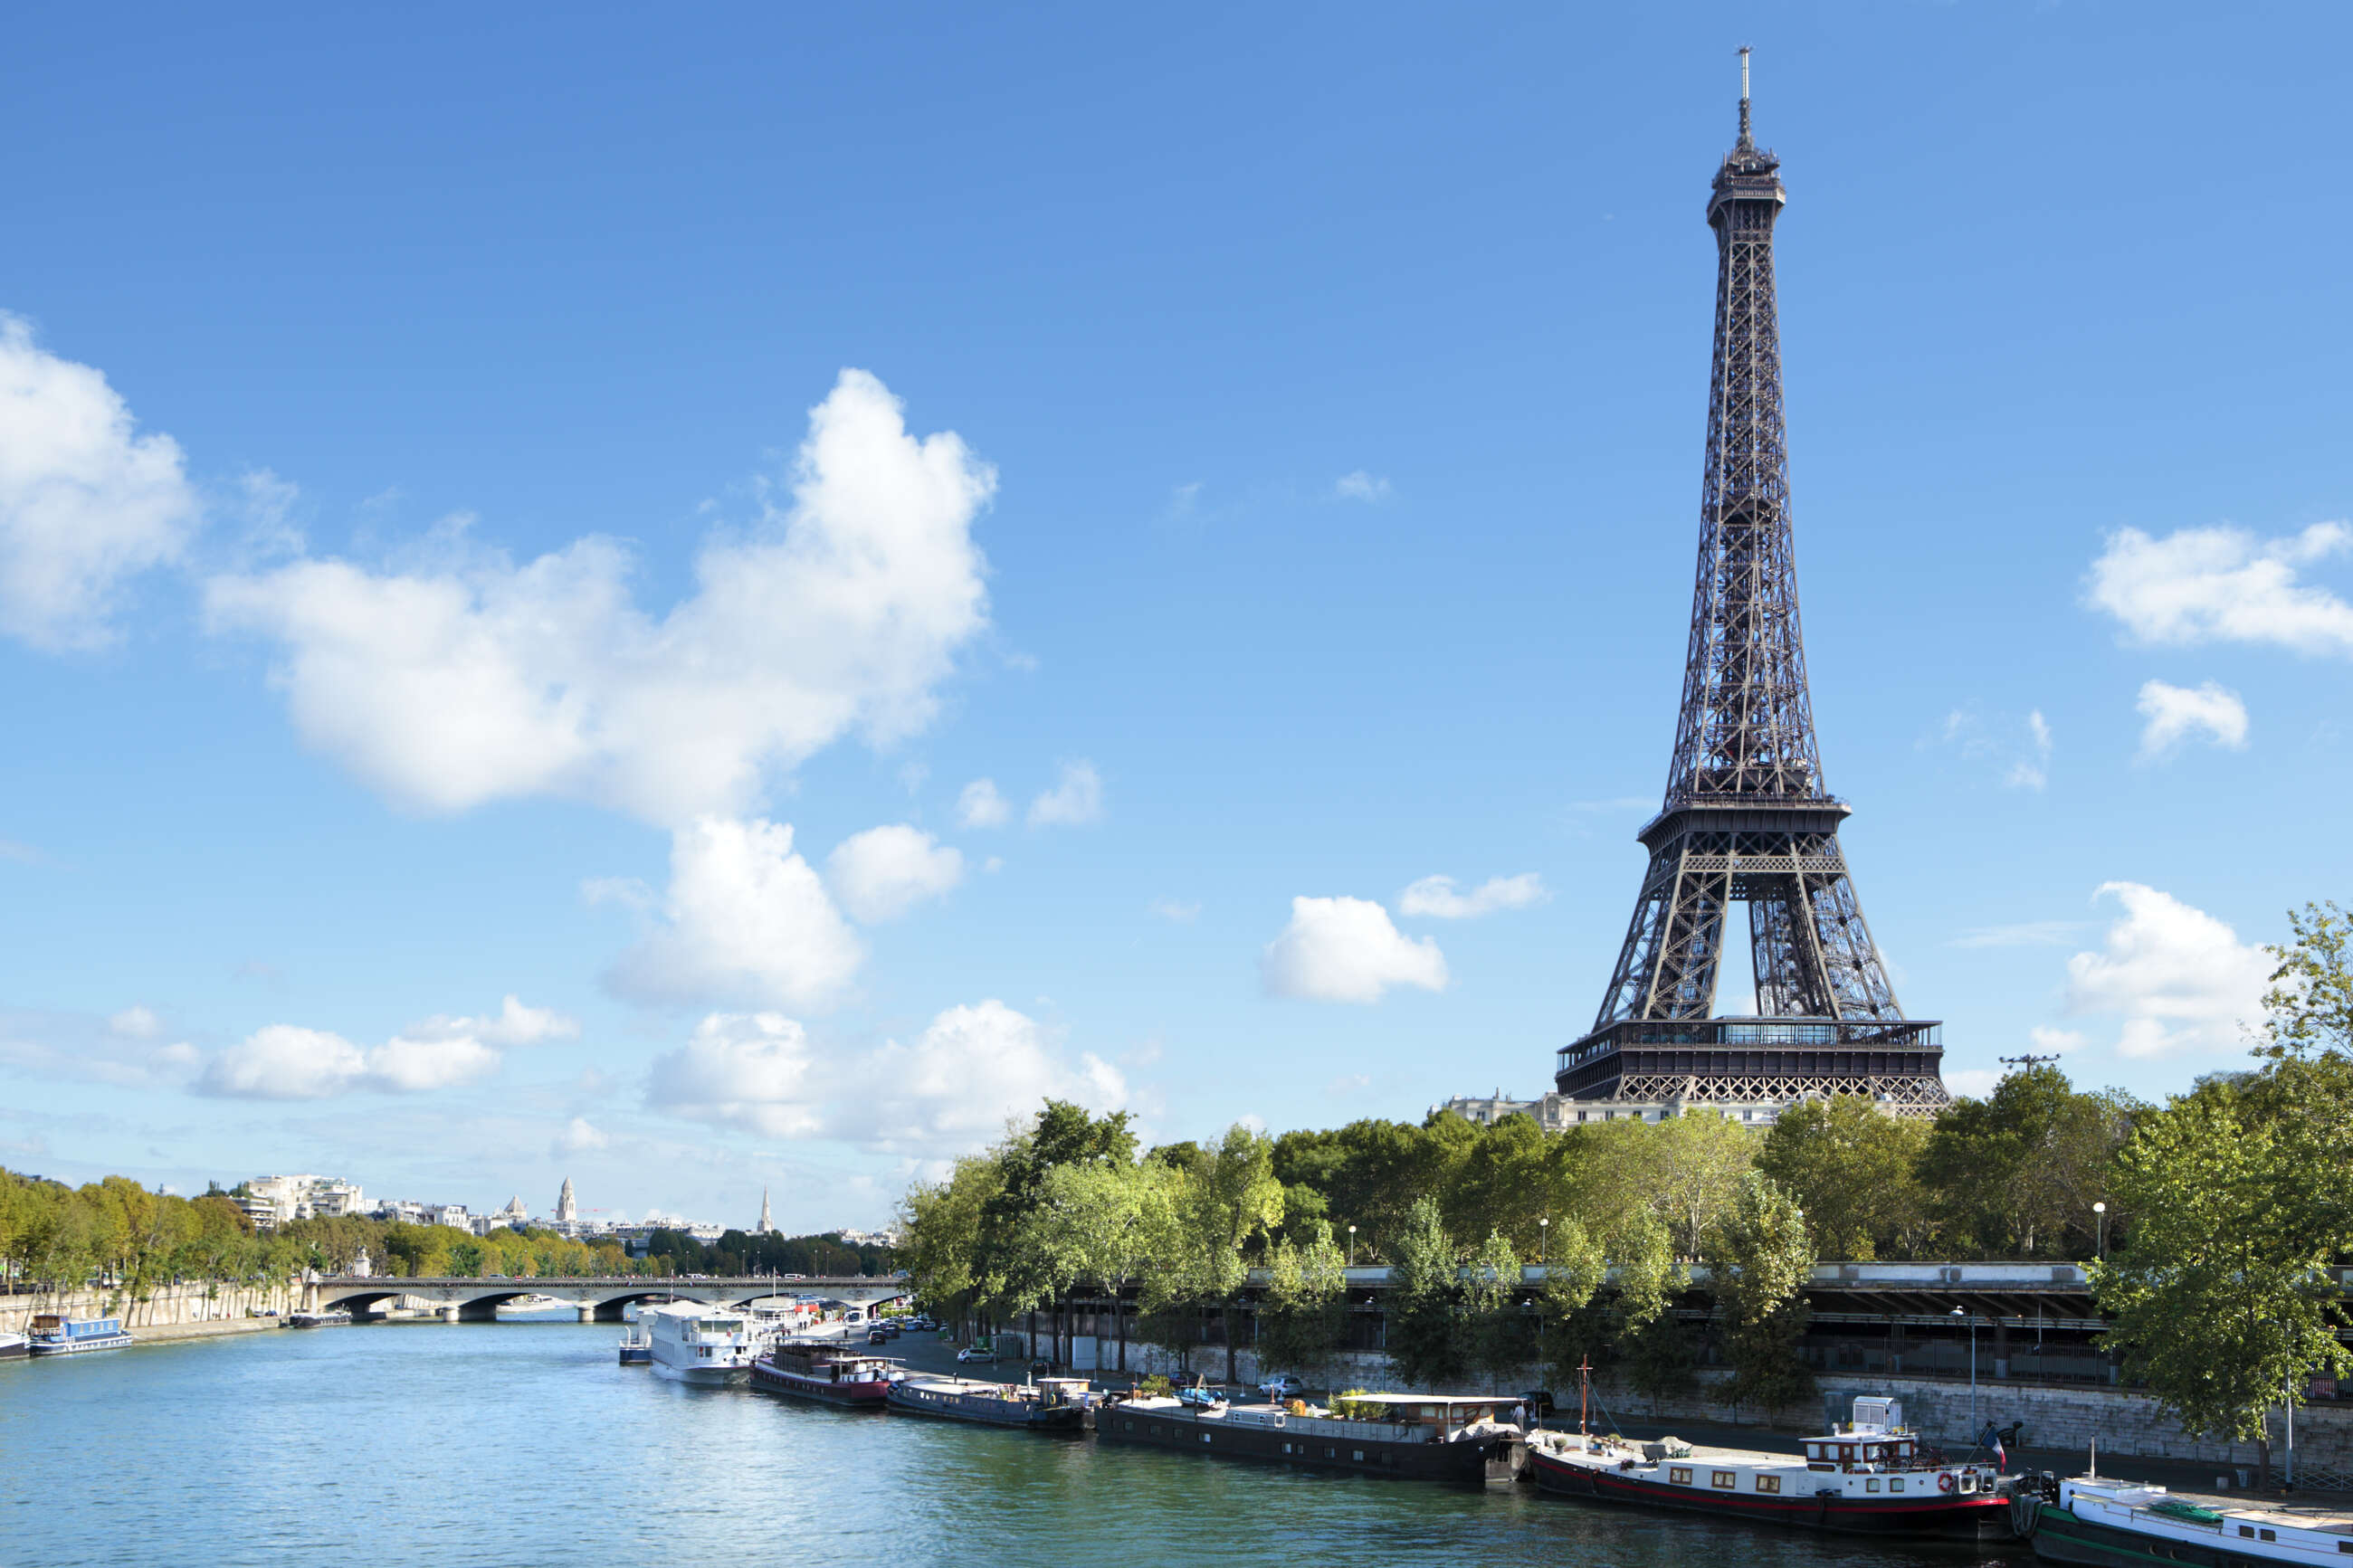 En 2024 podrás viajar a París desde España por menos de 30 euros. Imagen: Freepik.